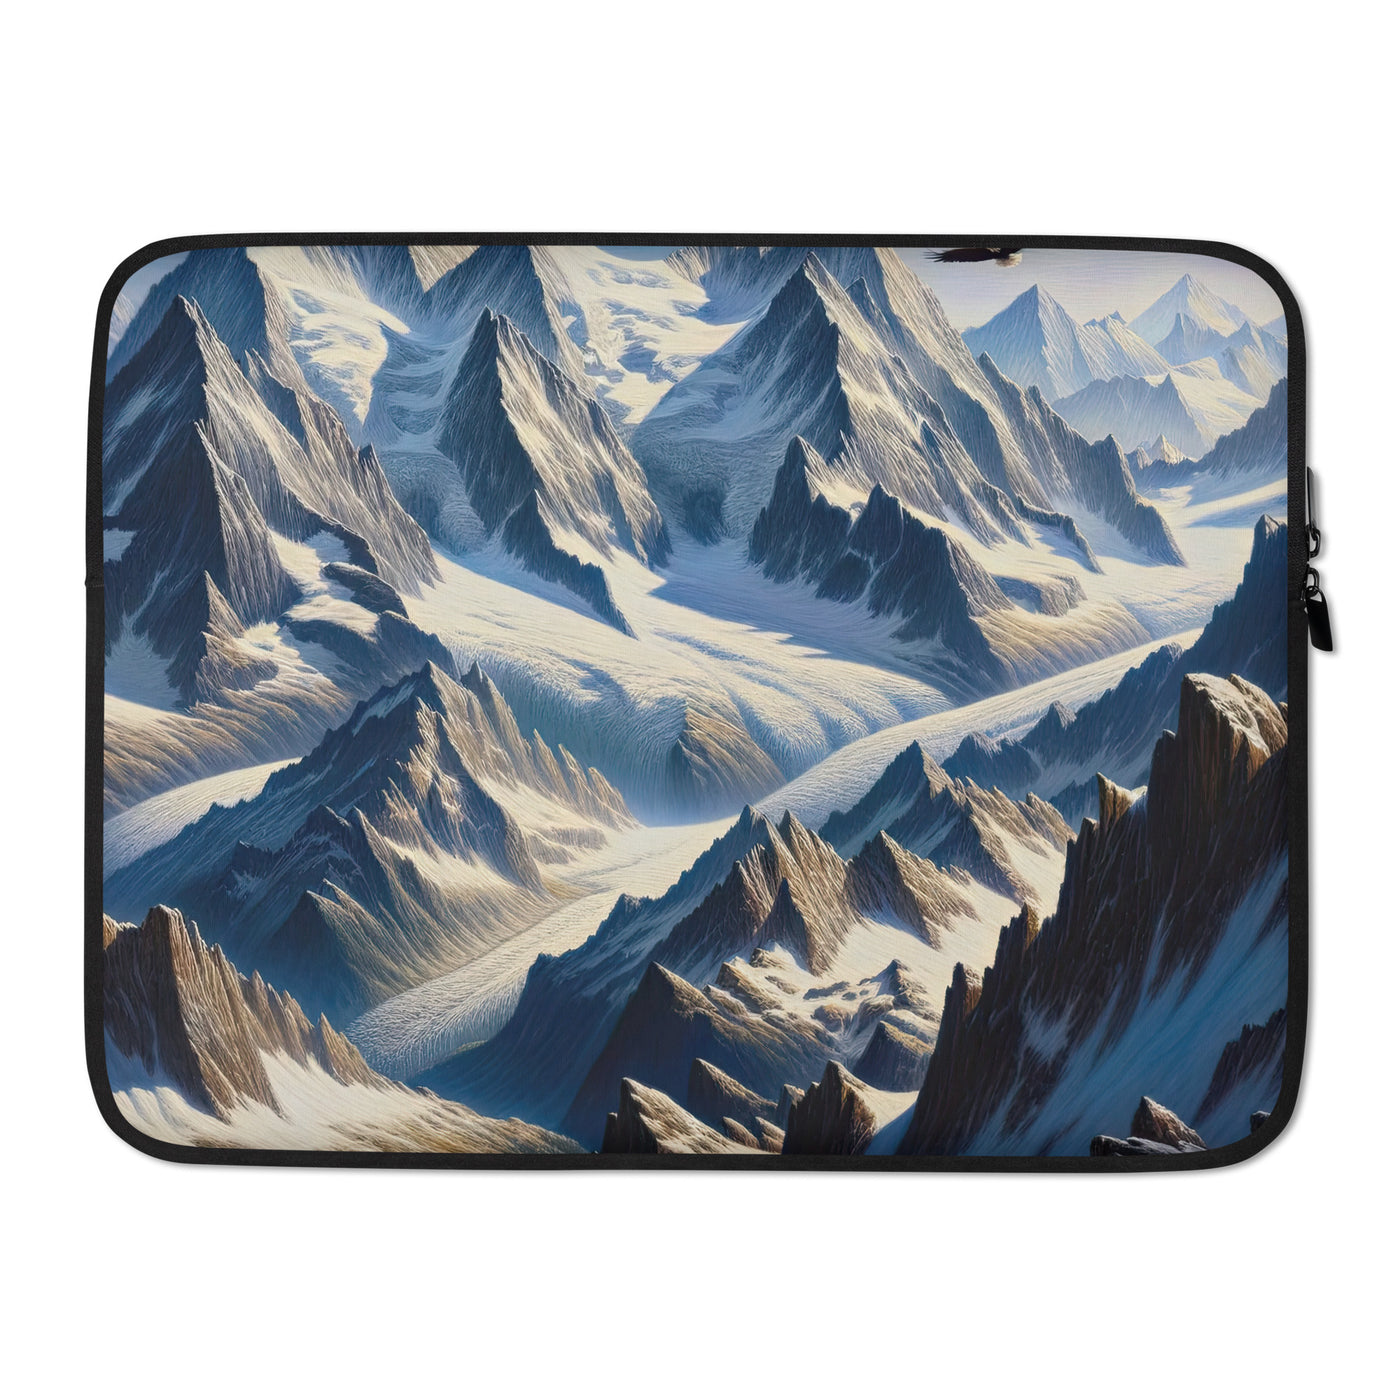 Ölgemälde der Alpen mit hervorgehobenen zerklüfteten Geländen im Licht und Schatten - Laptophülle berge xxx yyy zzz 15″